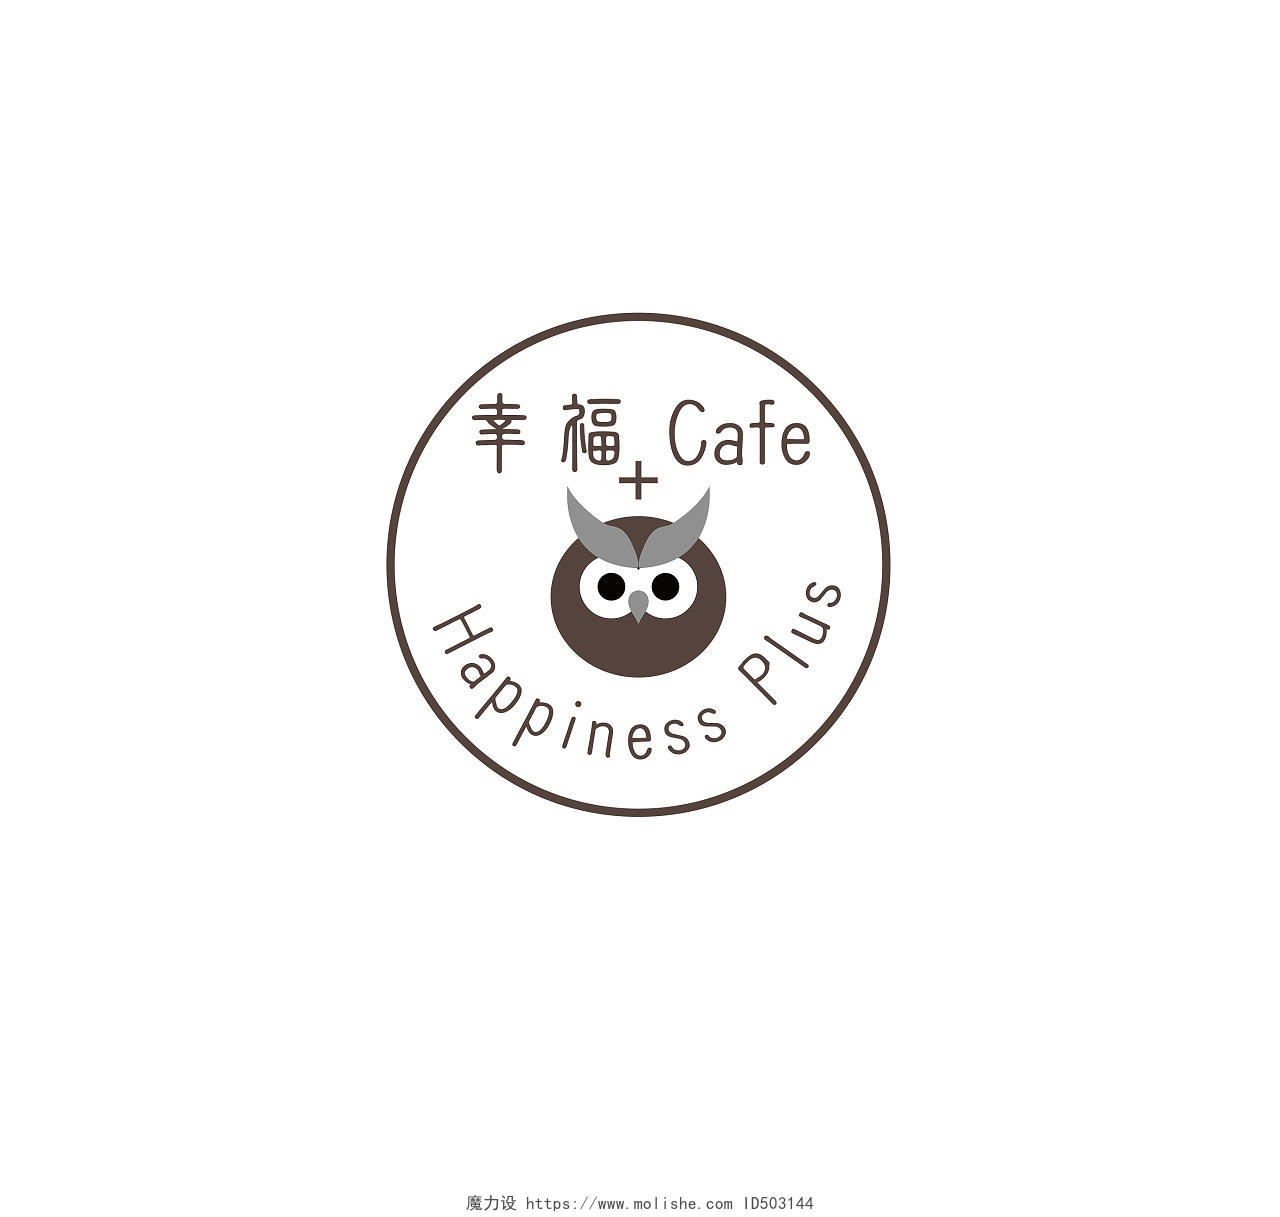 咖啡公司标志咖啡店铺LOGO标识标志设计咖啡logo